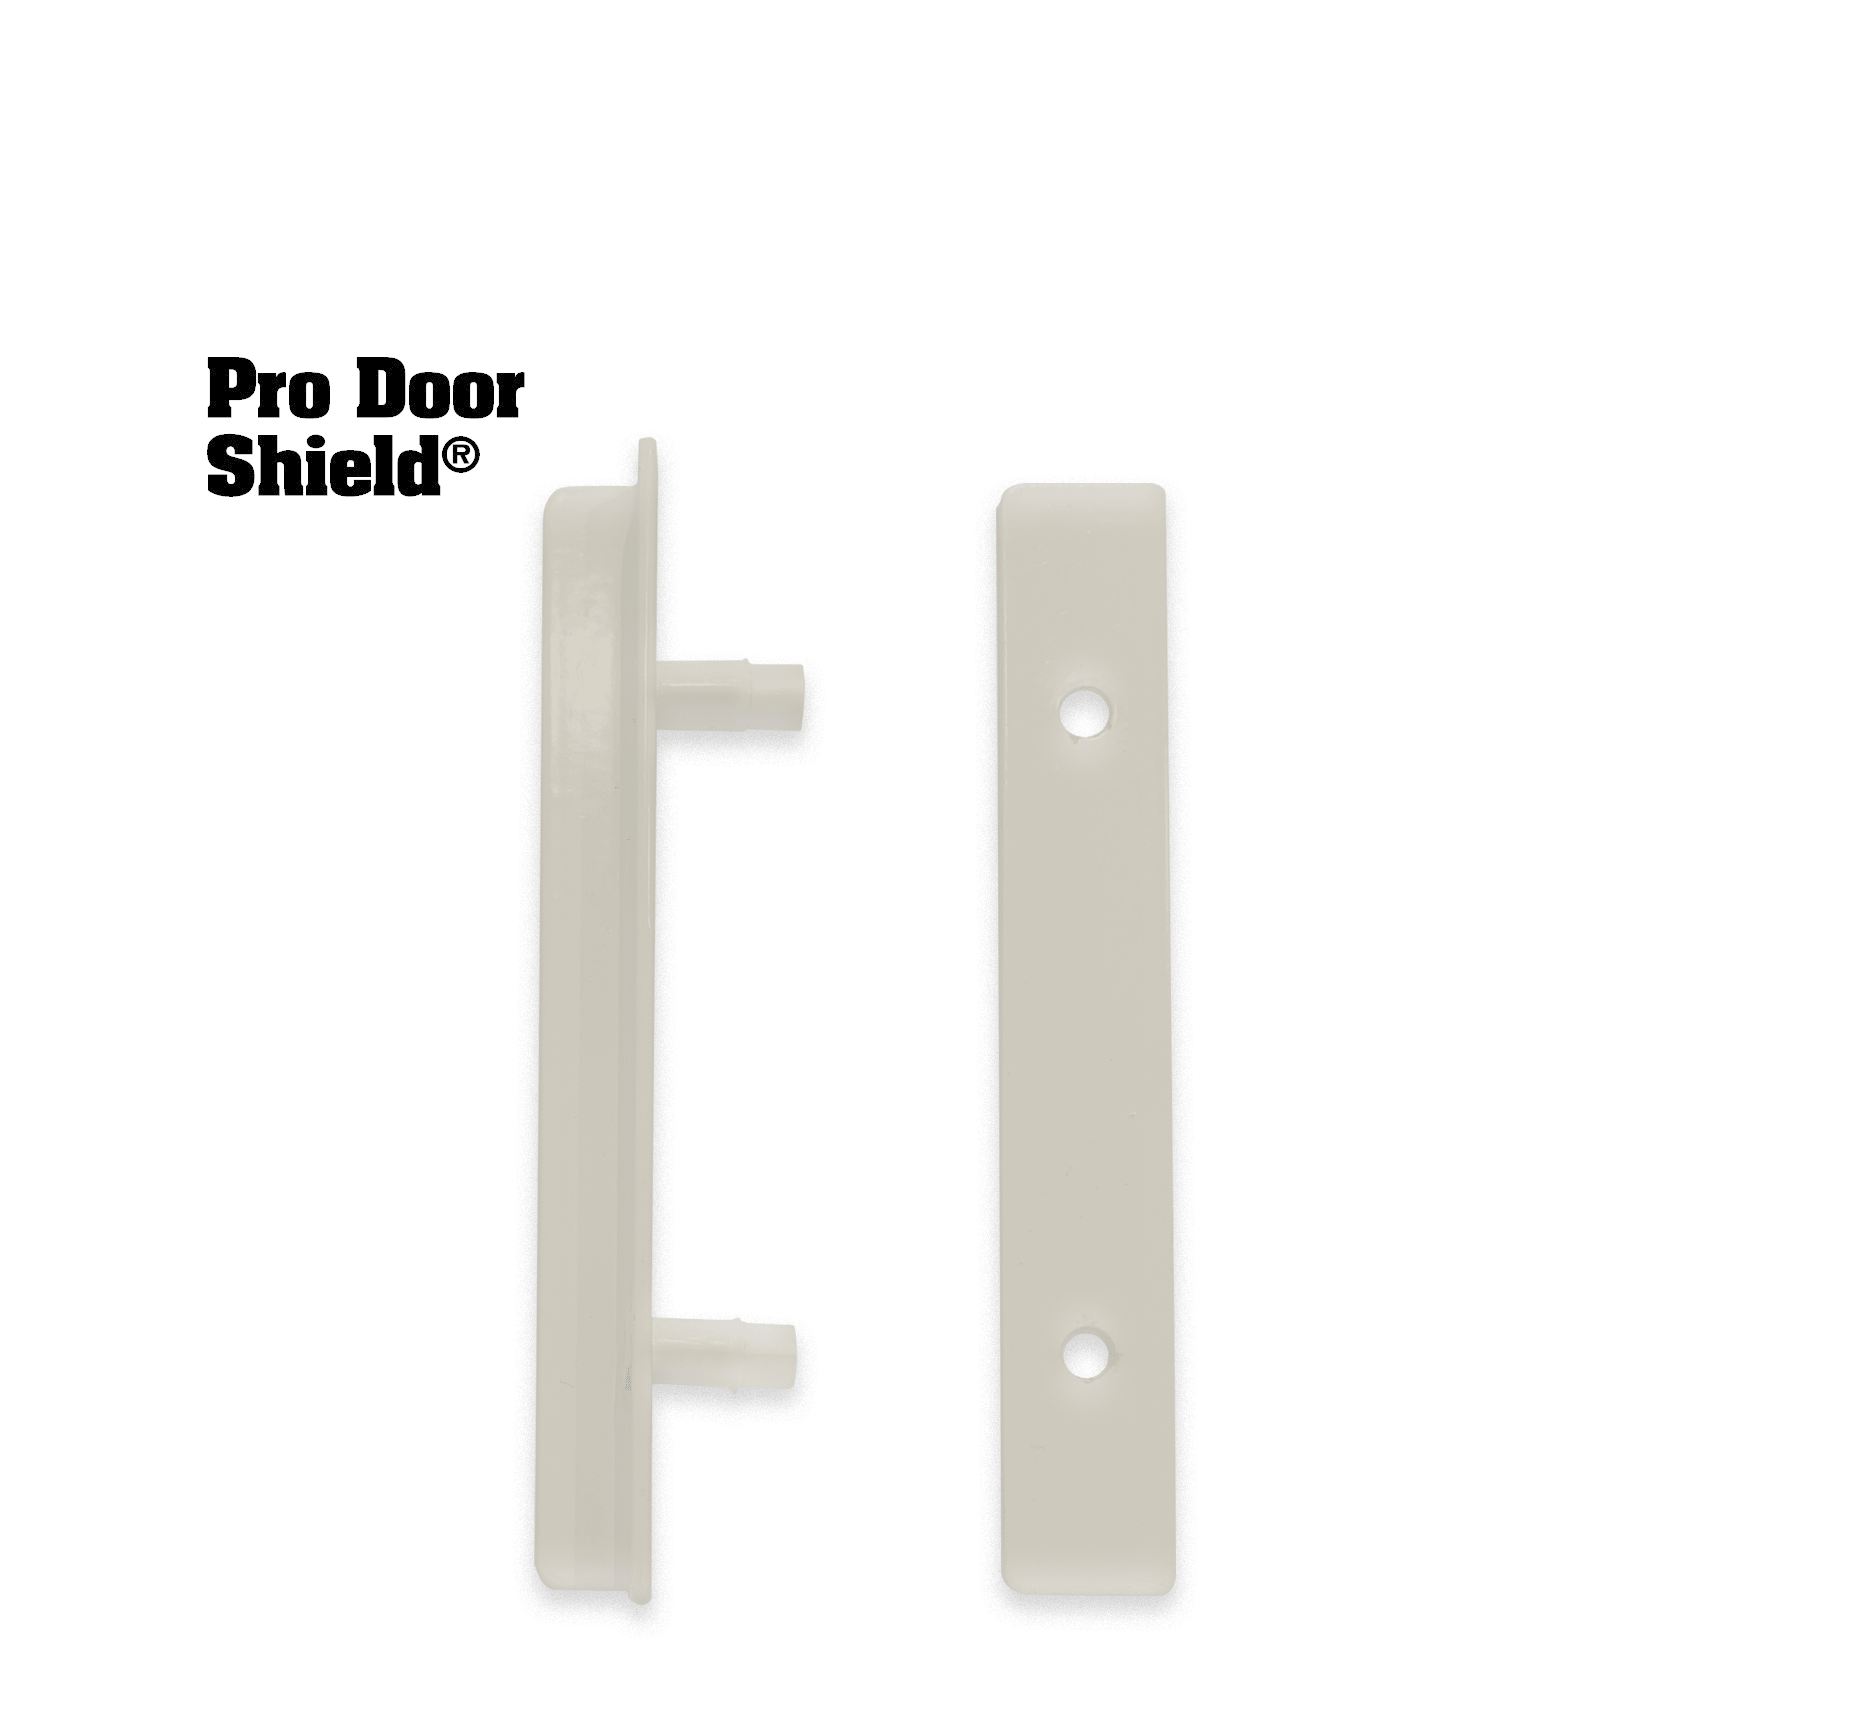 Sliding Glass Door Security – Door Armor